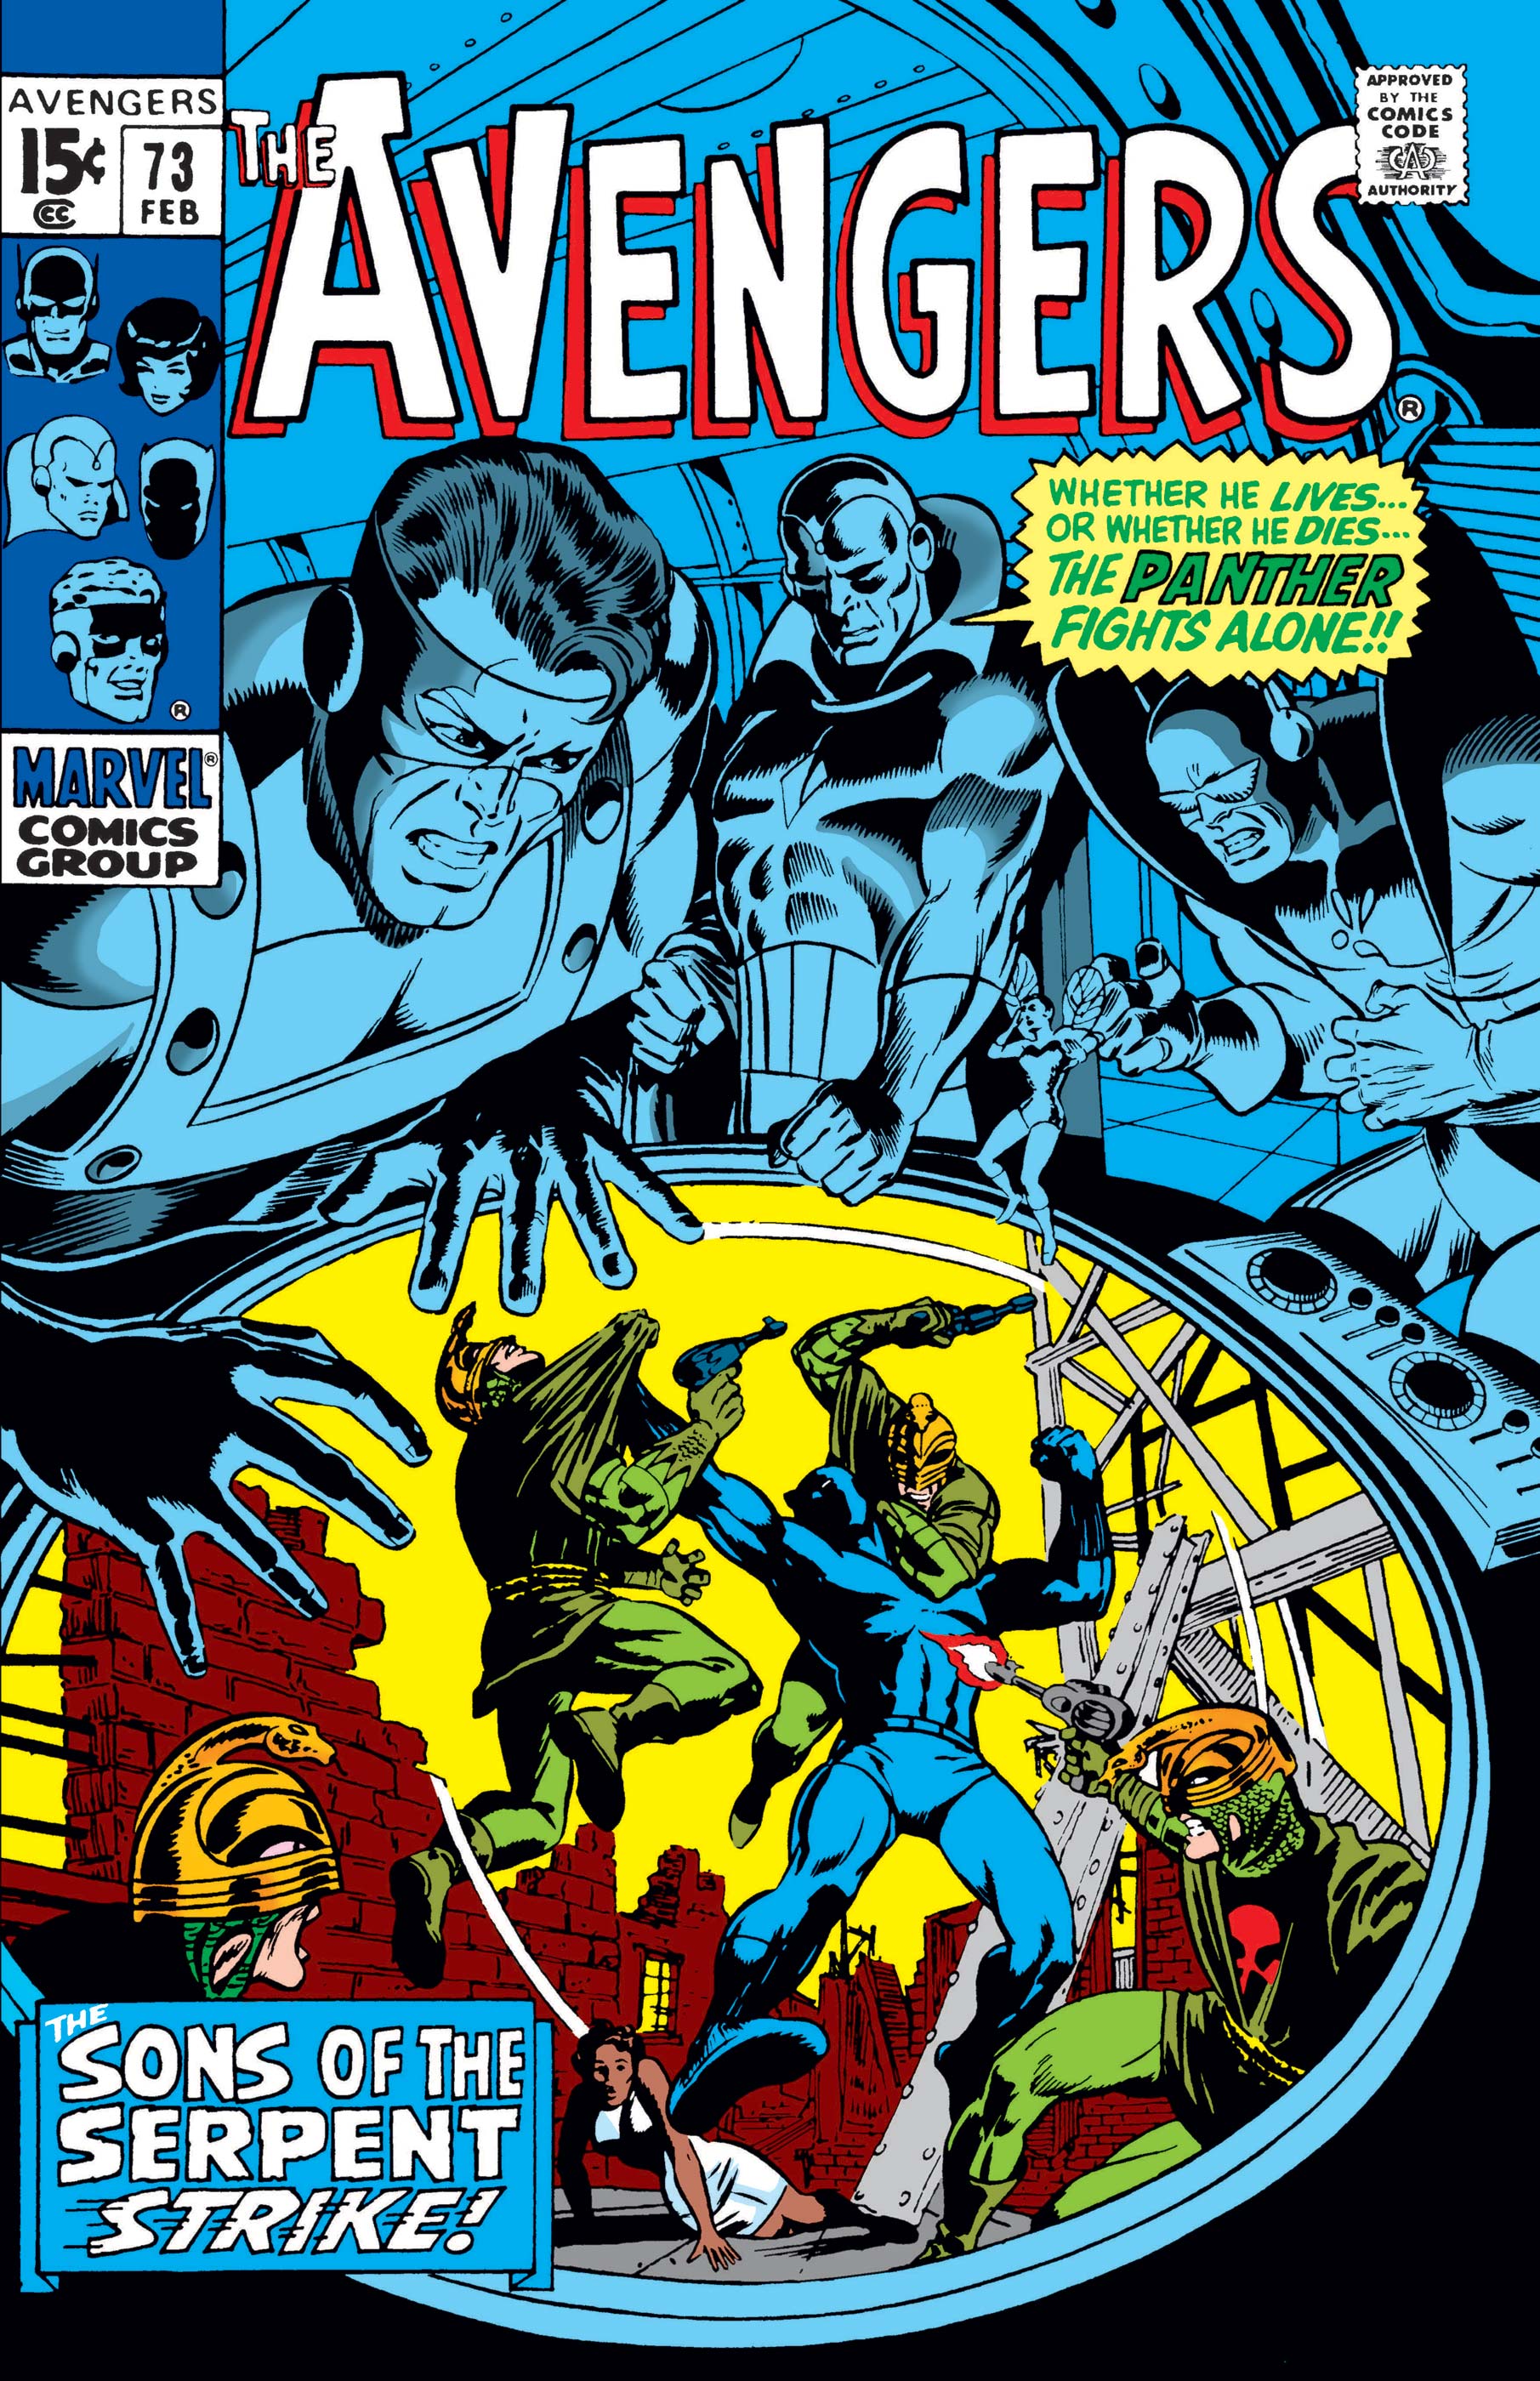 Avengers (1963) #73